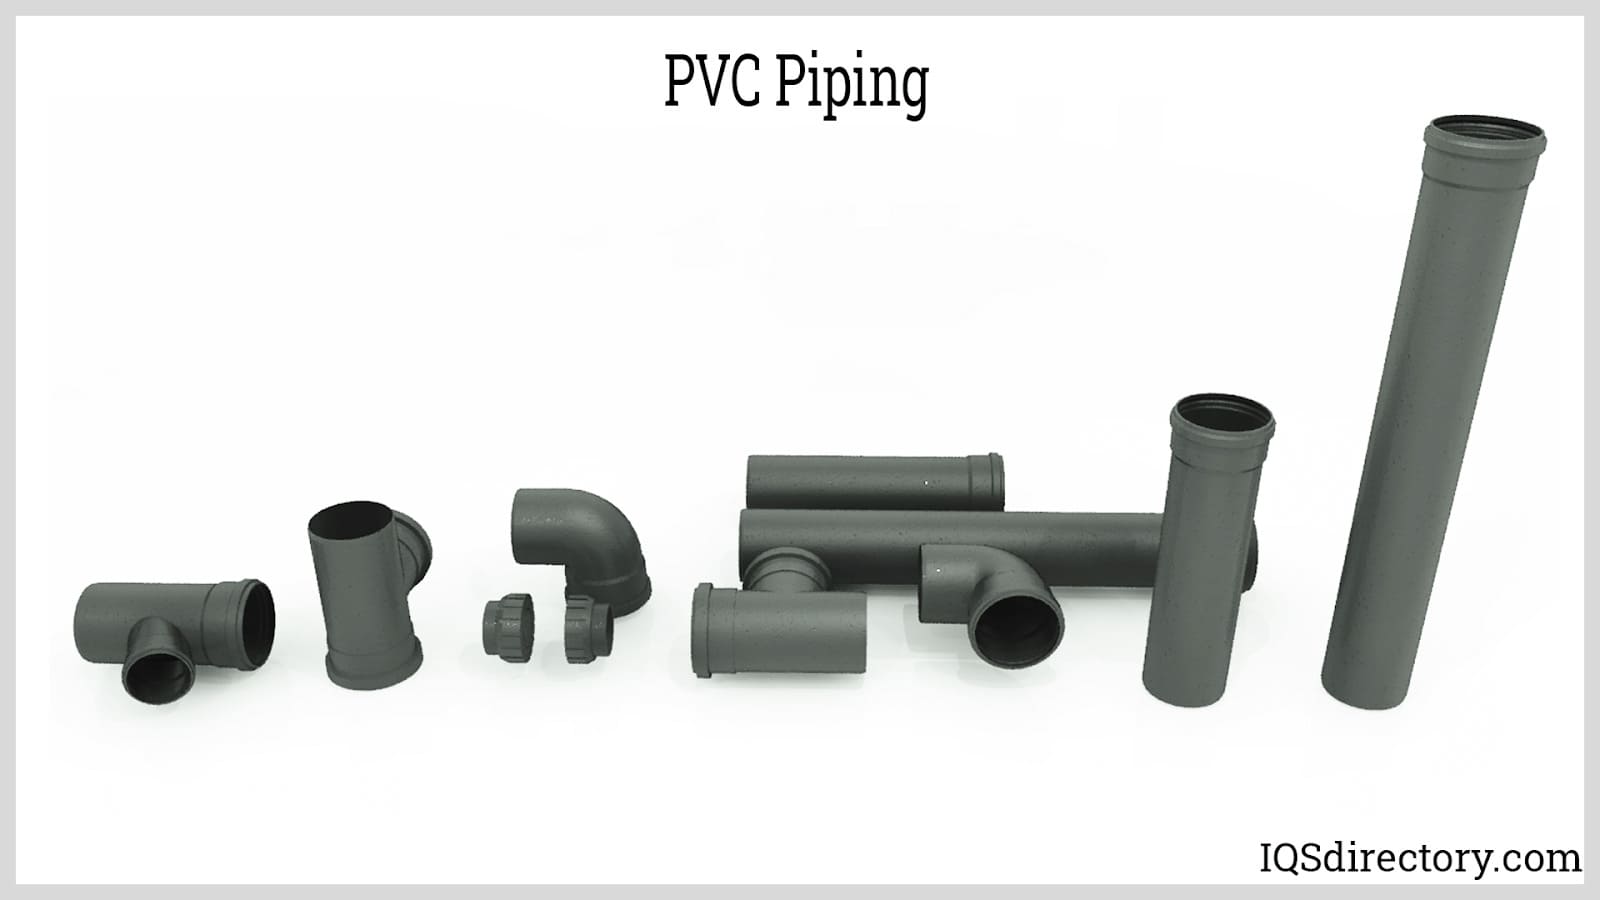 PVC Piping